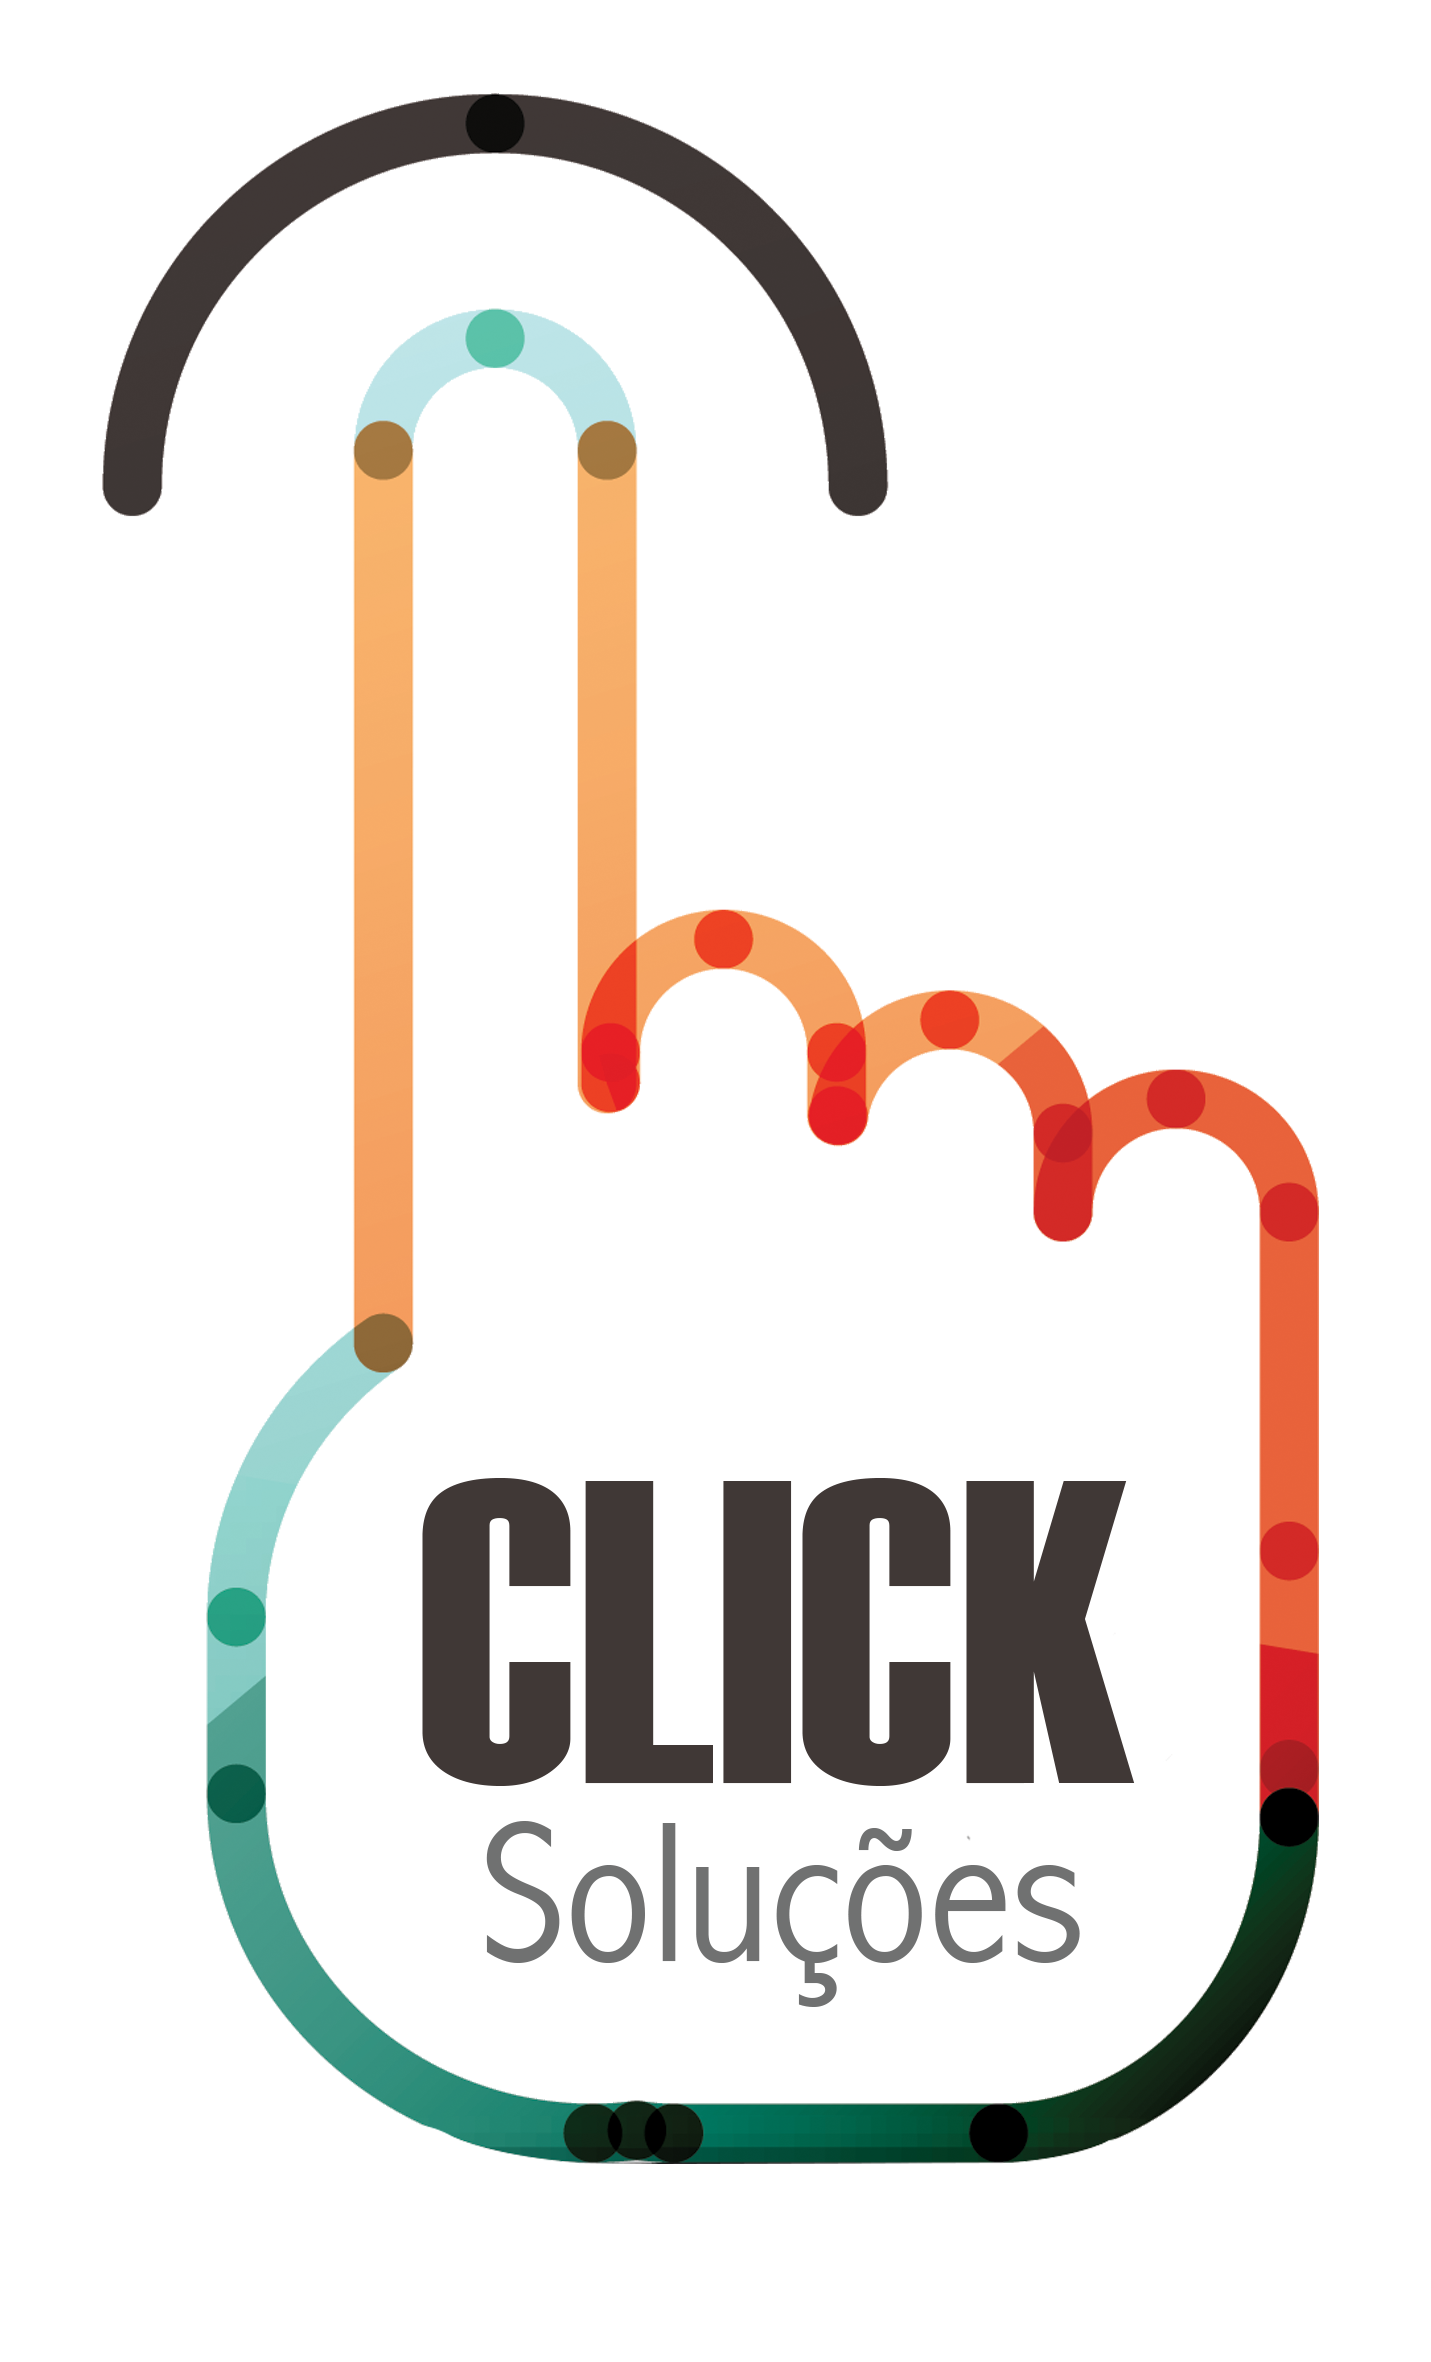 CLICK SOLUÇÕES MS Logo